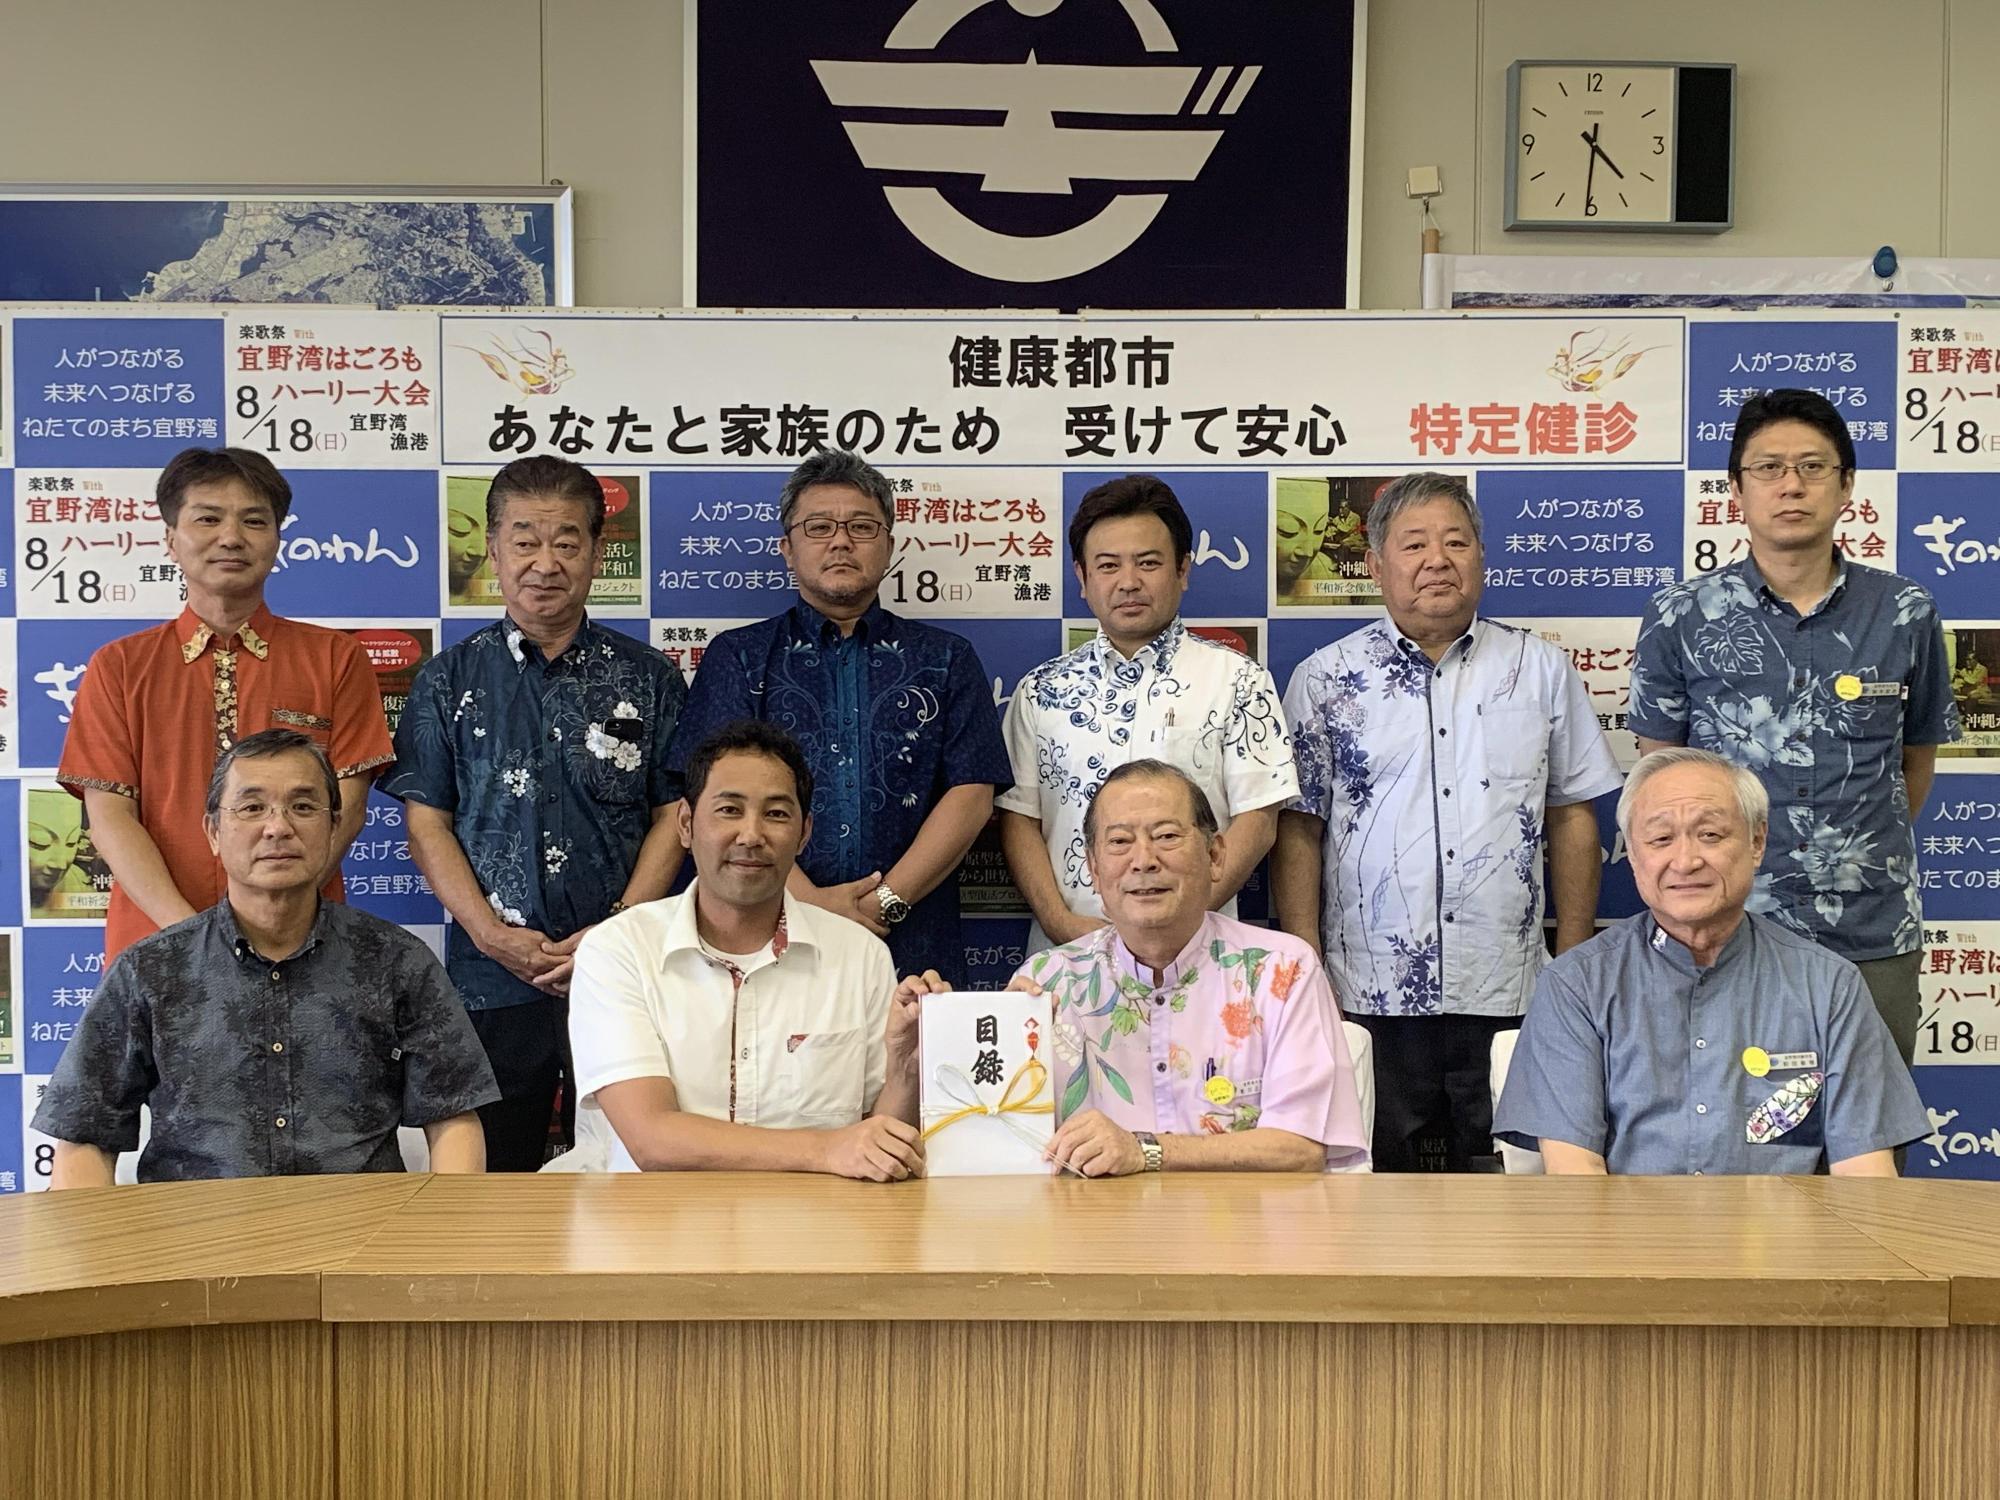 前列に4名の方々が座り、真ん中に座っている松川市長と1名の男性が目録を持っており、後方には6名の関係者の方々が写っている集合写真